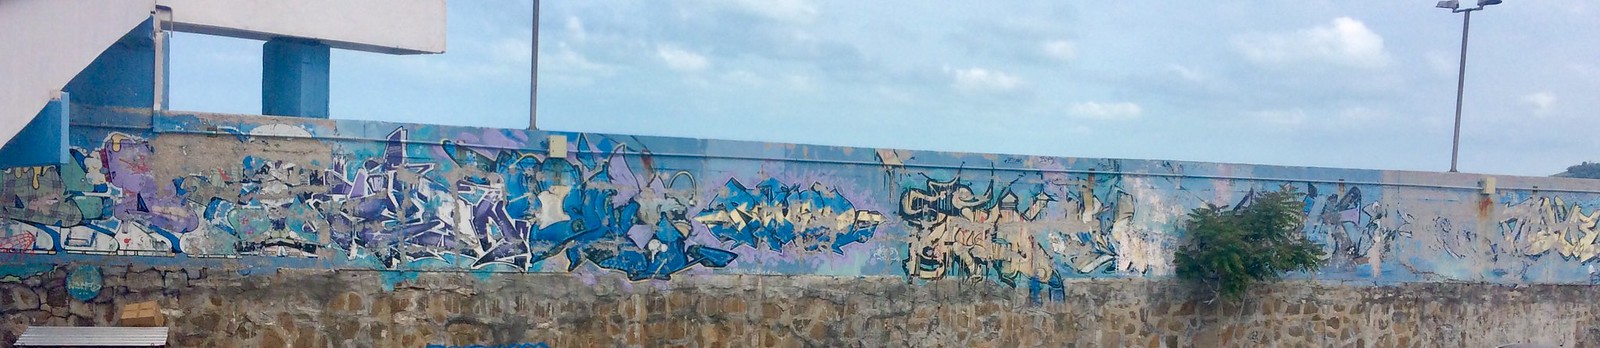 201705 - Balkans - Large Graffiti Wall - 41 of 101 - Varna - Varna, May 25, 2017